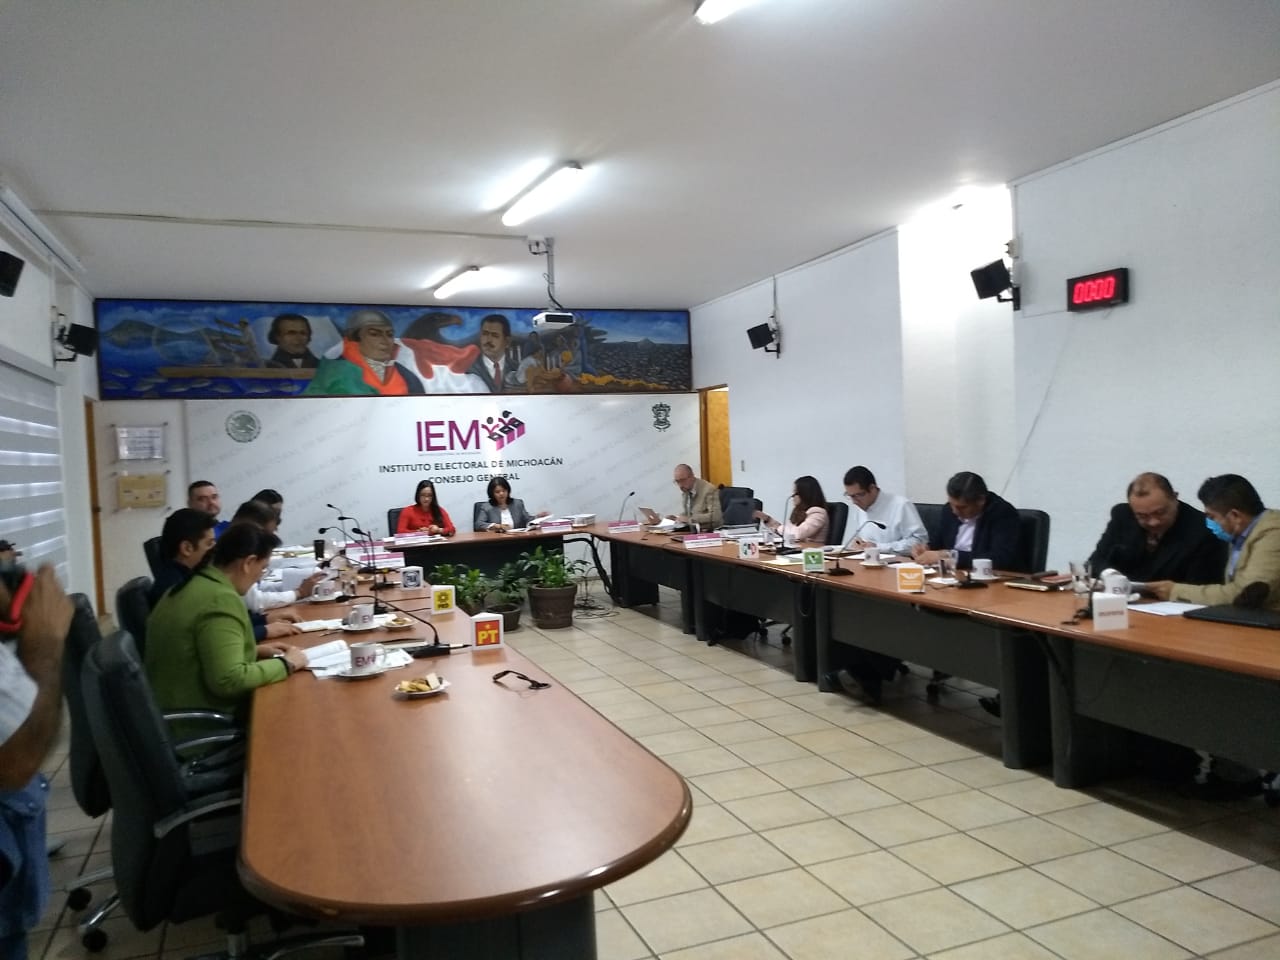 IEM acompañará renovación de consejo en Arantepacua